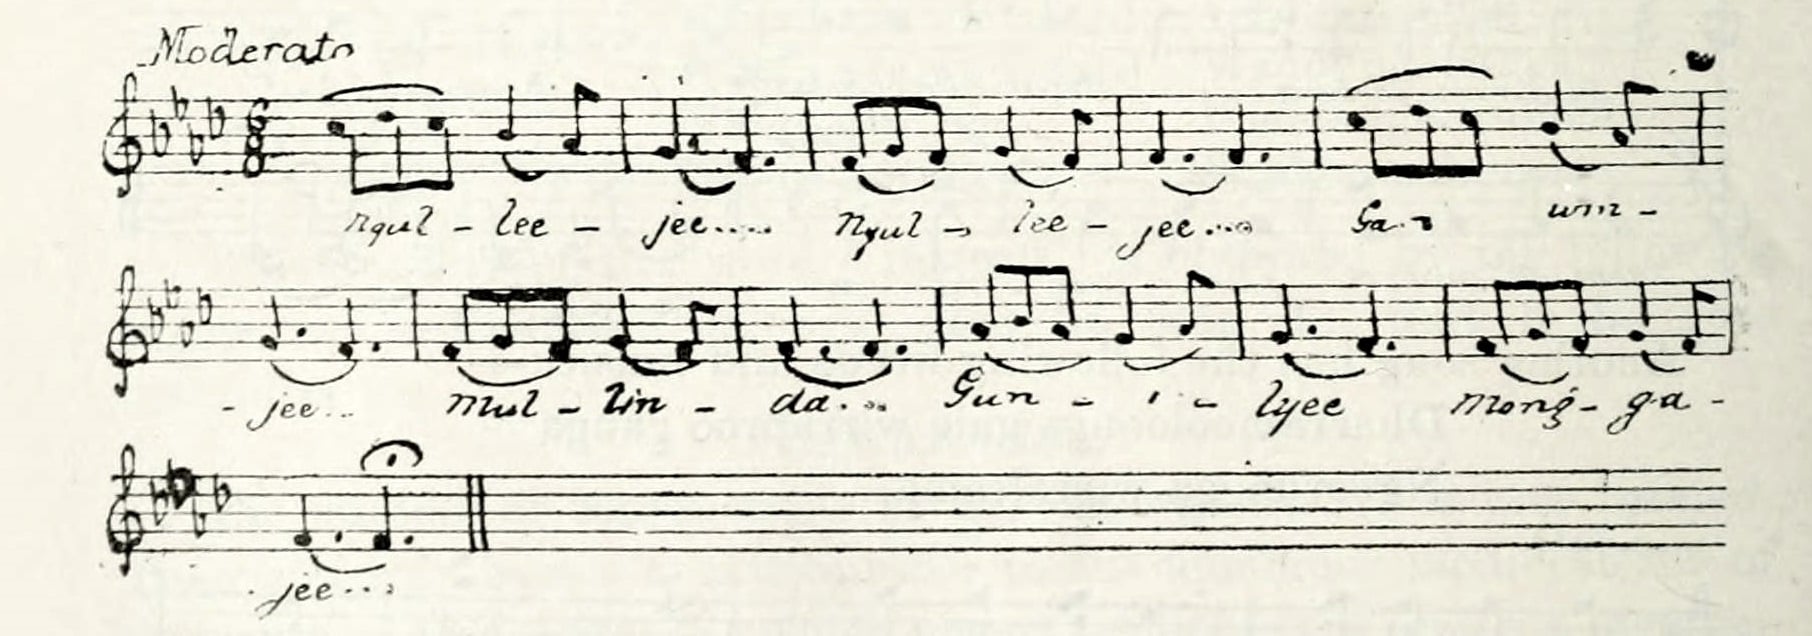 34.5 Ngulleejee (Mathews 1902), 62)